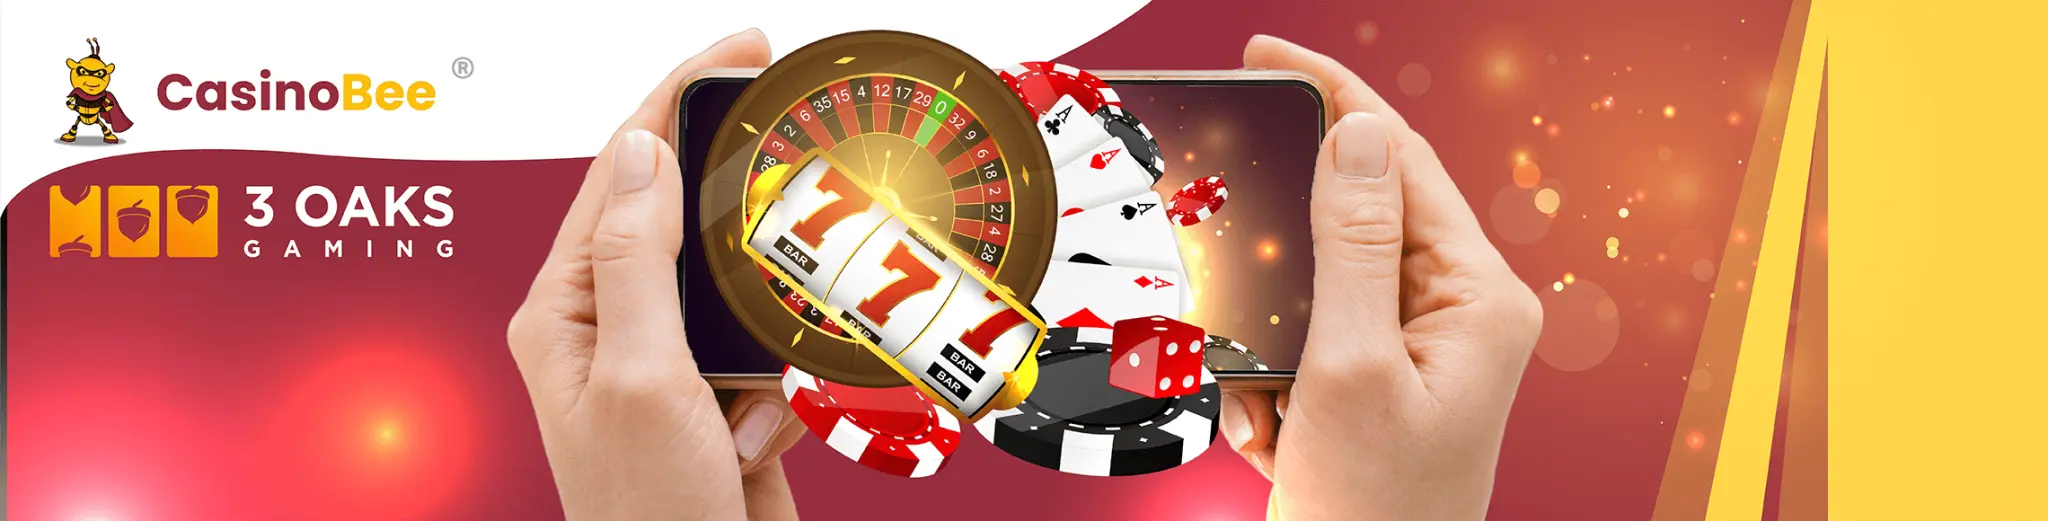 Mobile Casino mit 3 Oaks Gaming